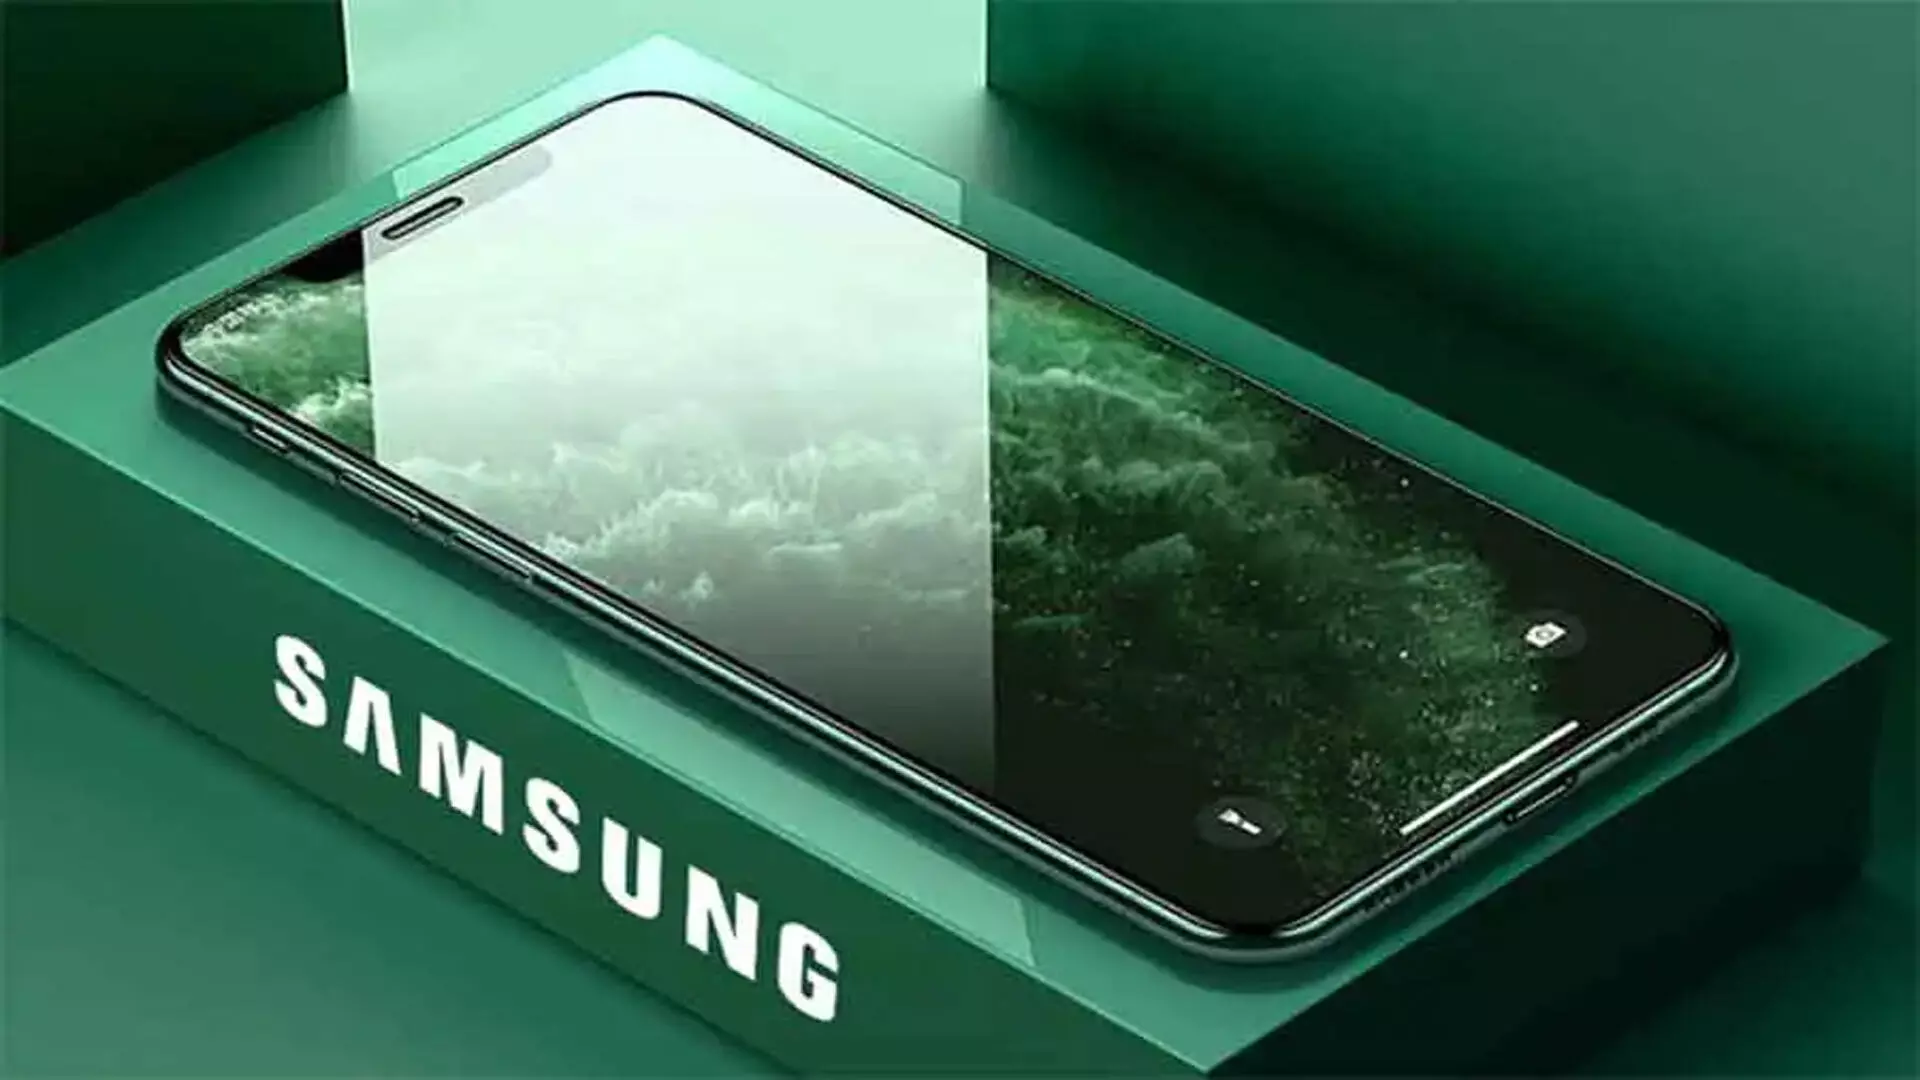 Samsung Galaxy S20 : मिल रही 12GB RAM, साथ में फोटोशूट कैमरा, जानिए फीचर्स